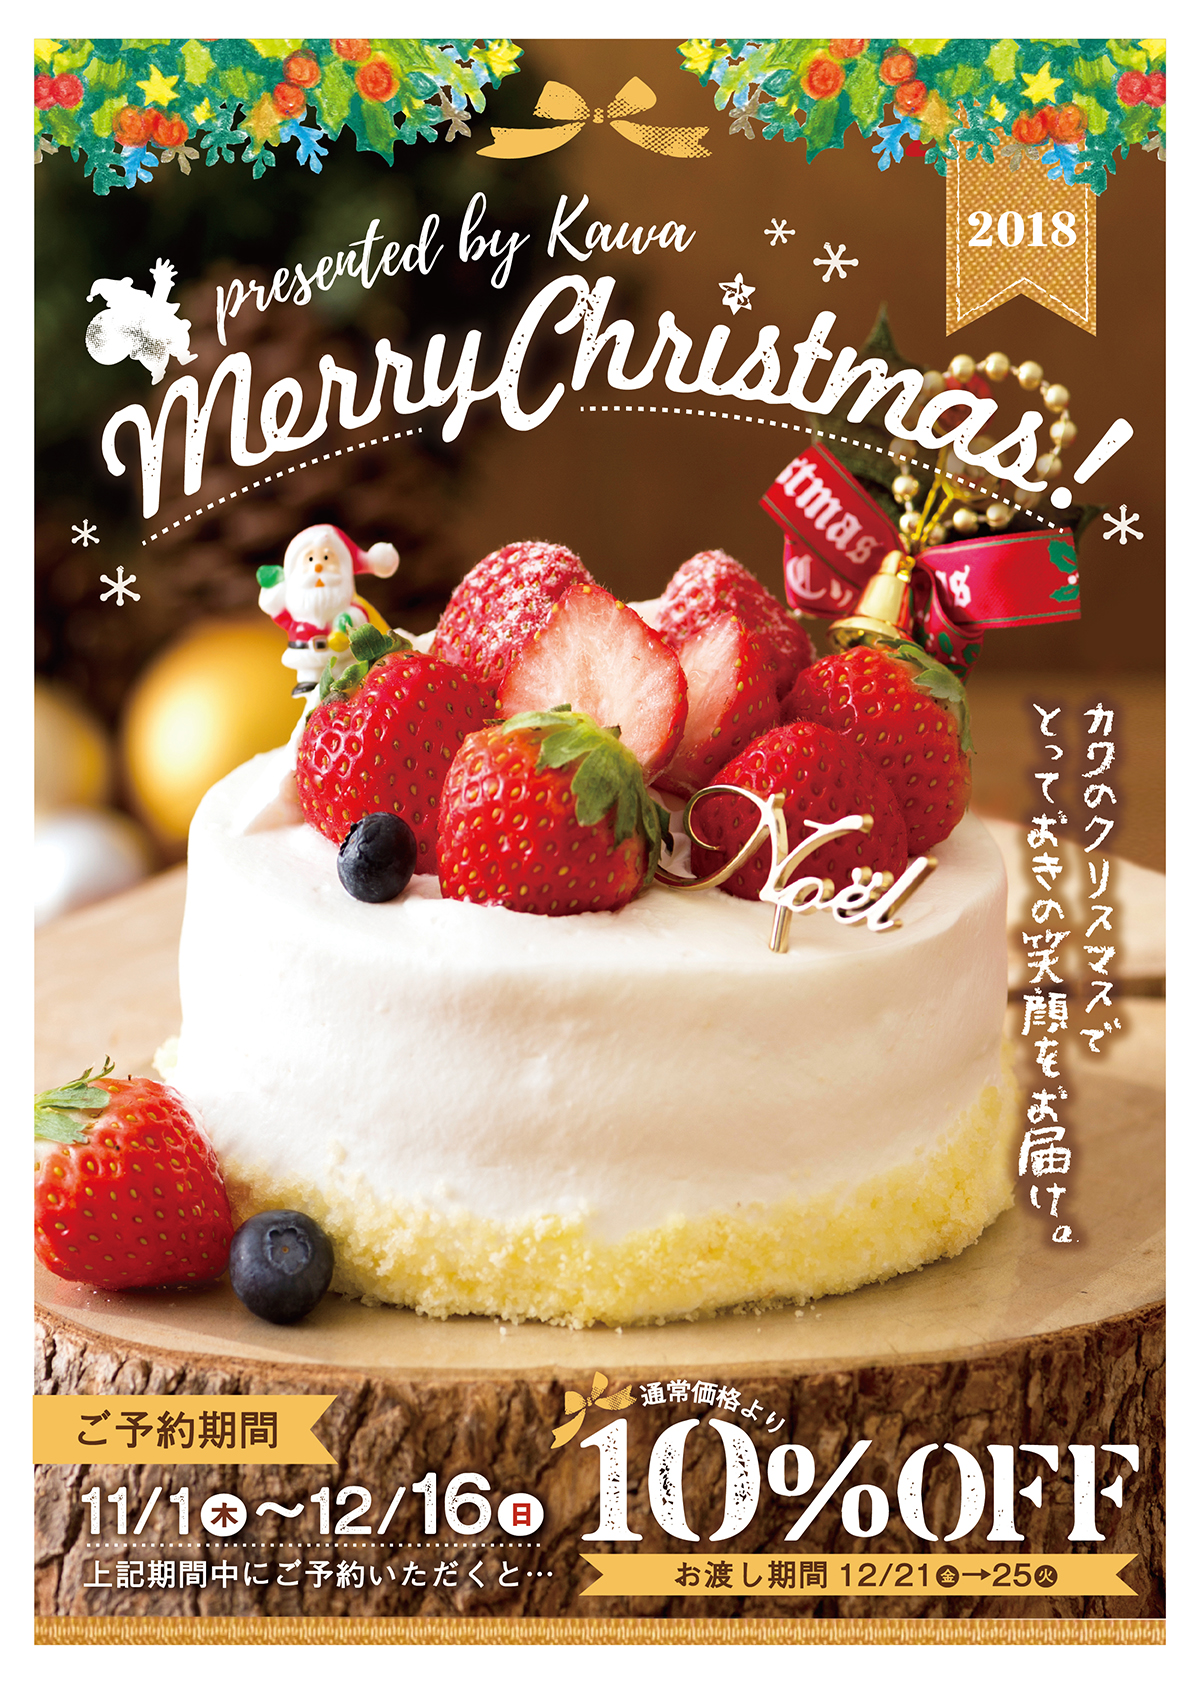 2018 カワのクリスマスケーキは11 1 木 12 16 日 のご予約で通常価格より10 Off パン工房カワ